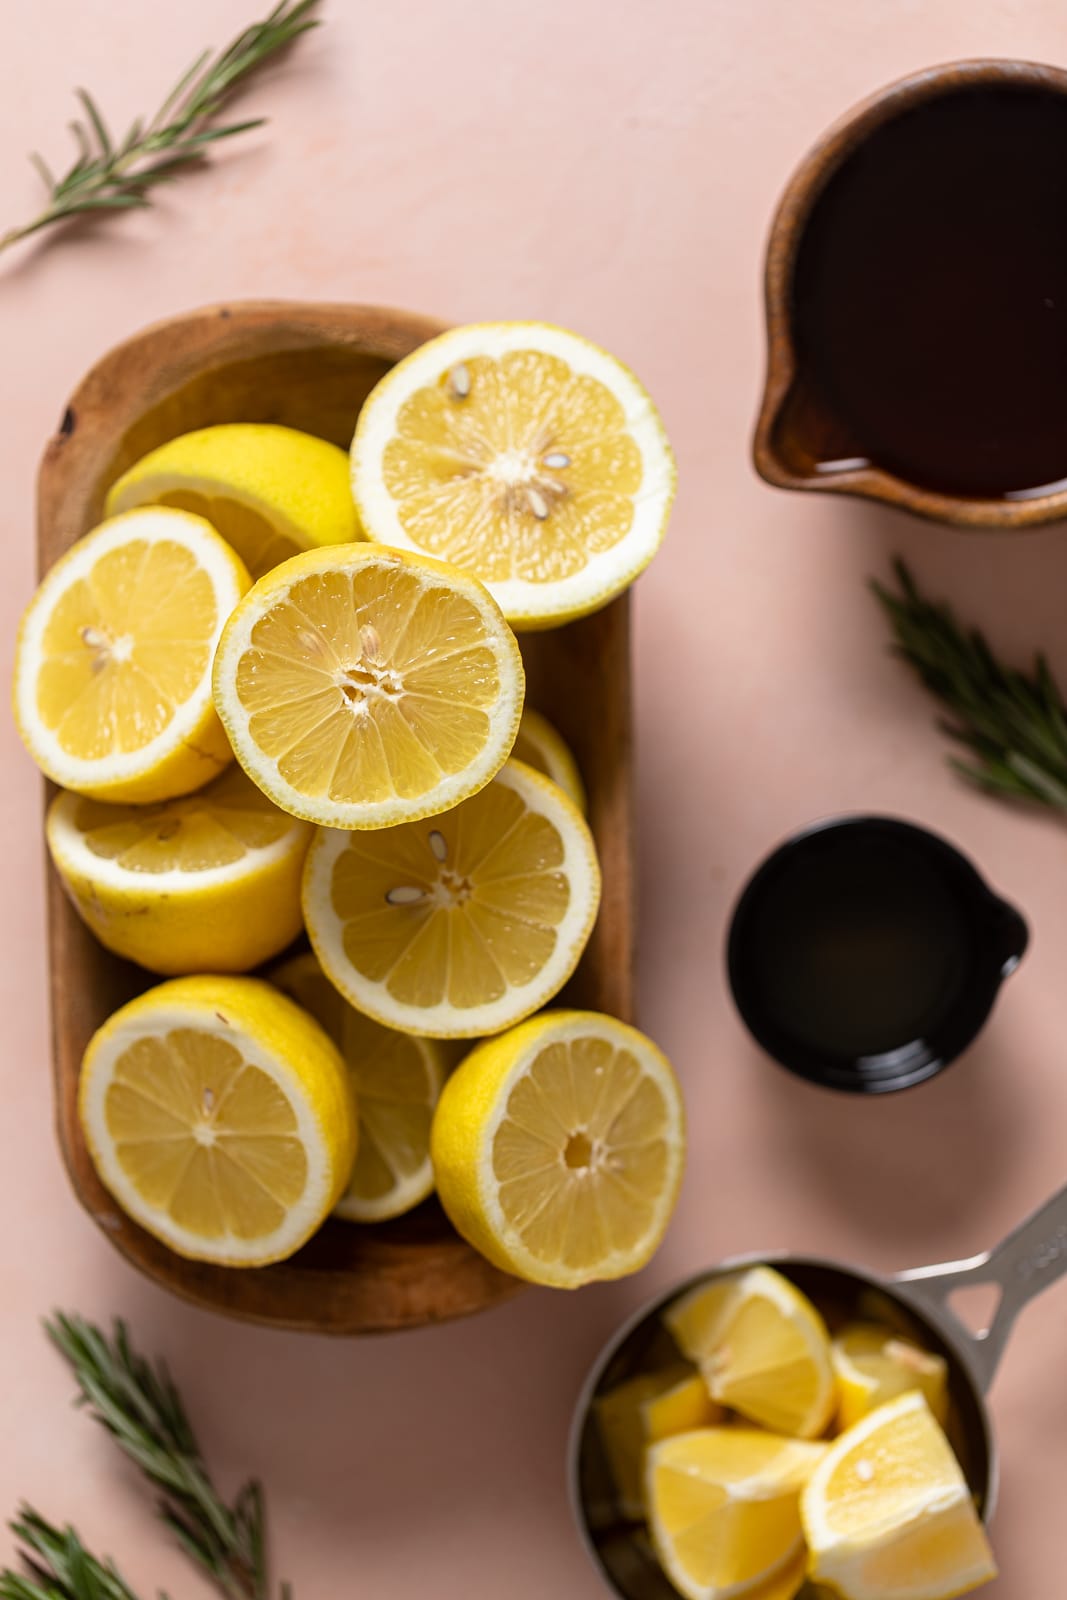 Wooden bowl of lemon halves near honey and rosemary